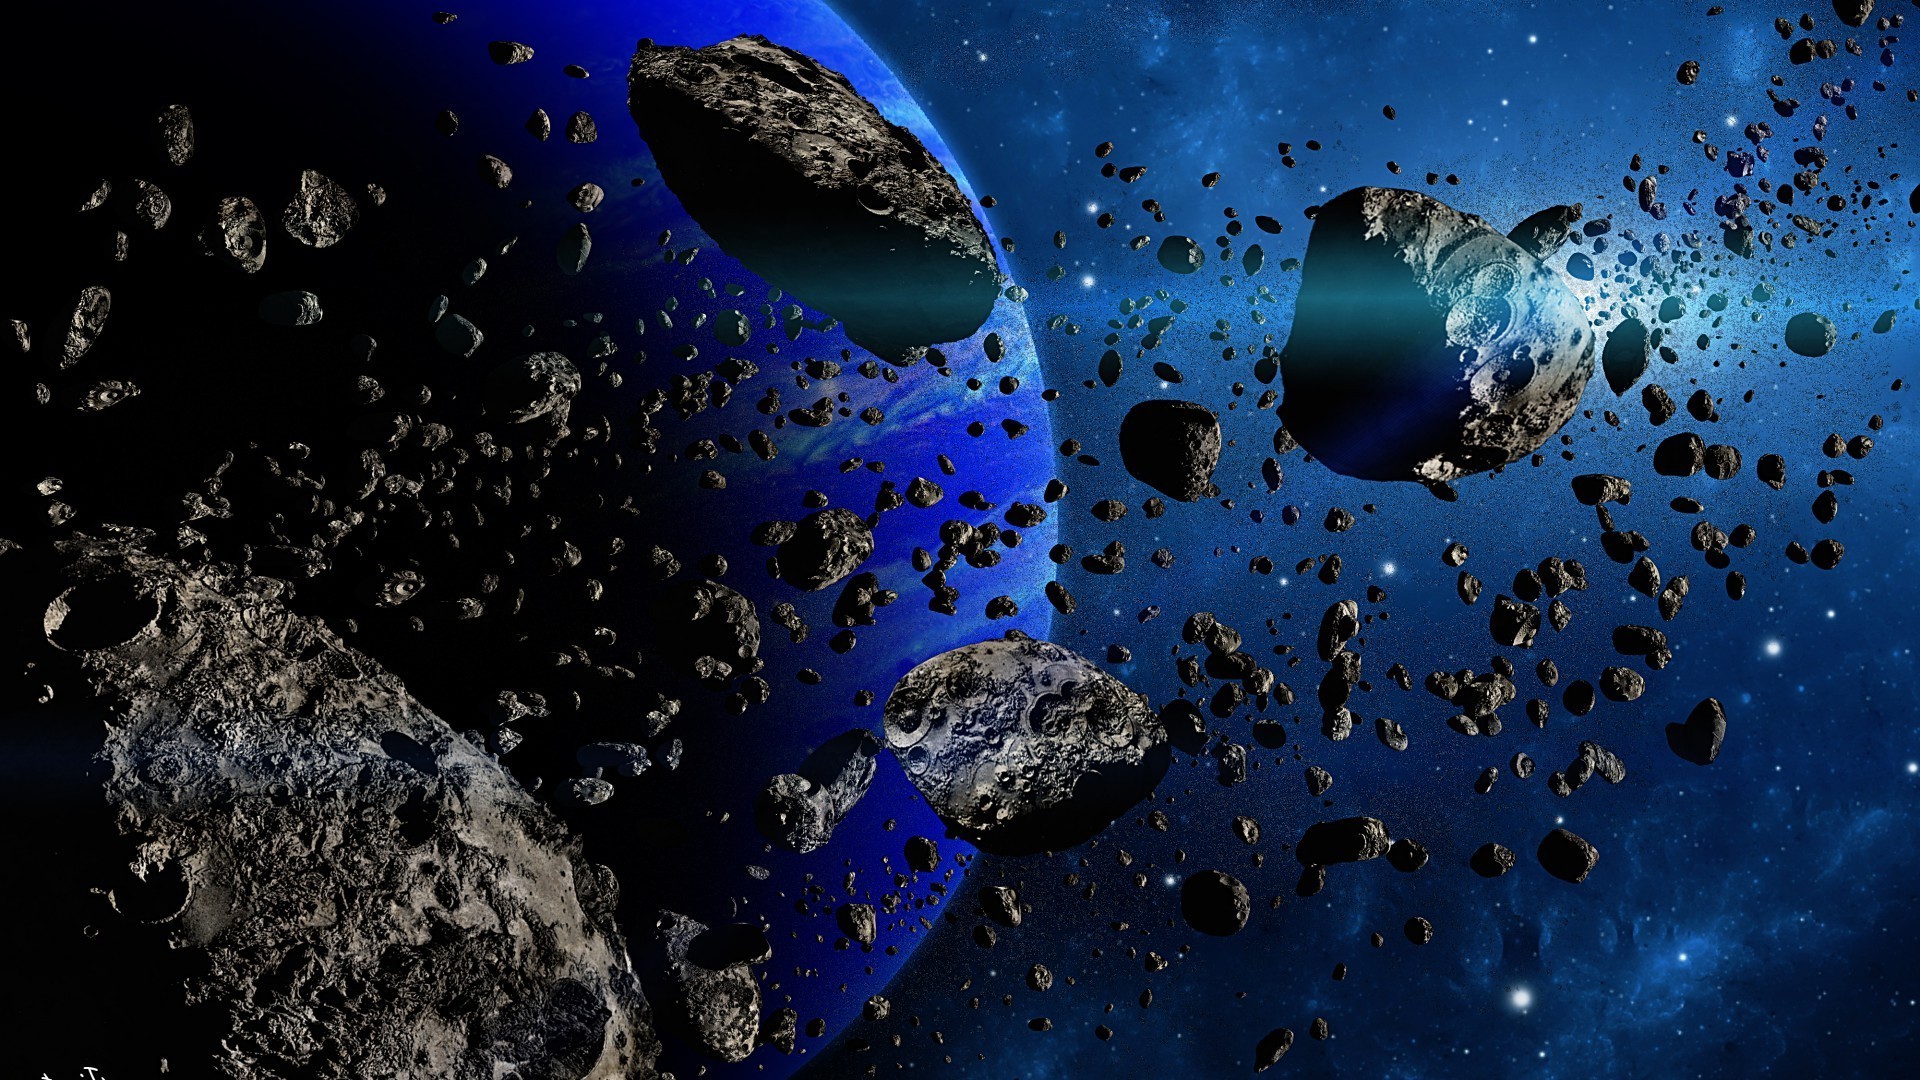 астероиды пузырь мокрый подводный падение воды дождь капли бирюза понятно аннотация рабочего стола природа наука отражение океан свет чистые всплеск пространство